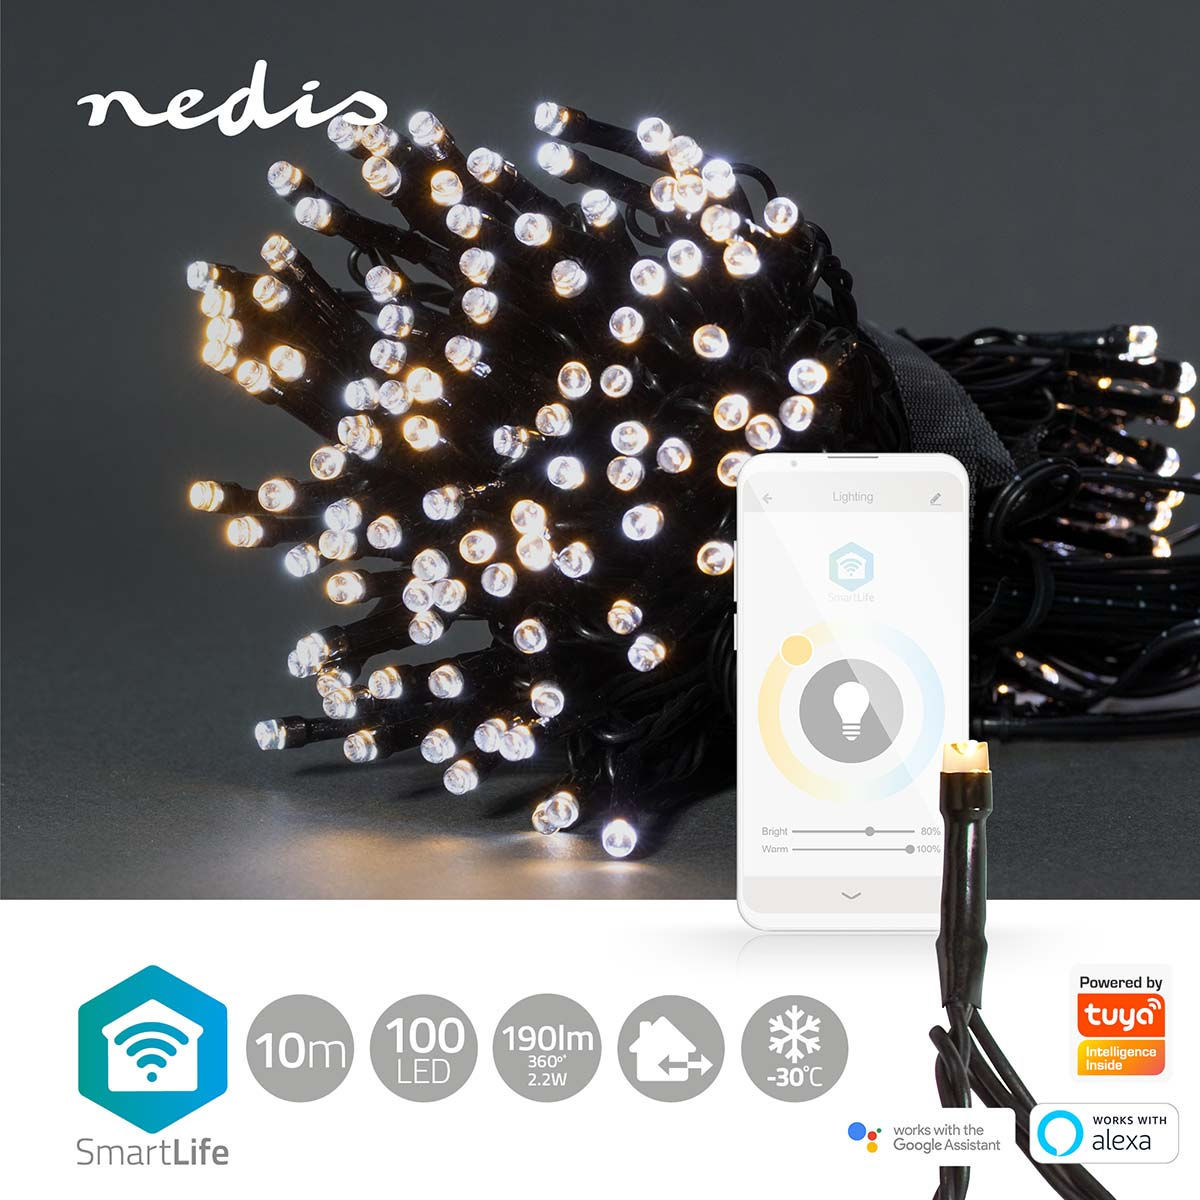 5412810404230 Nedis SmartLife 100 LED 10M hvide lys - Lyskæde Hus & Have,Smart Home,Smart belysning 2190002008 WIFILX02W100